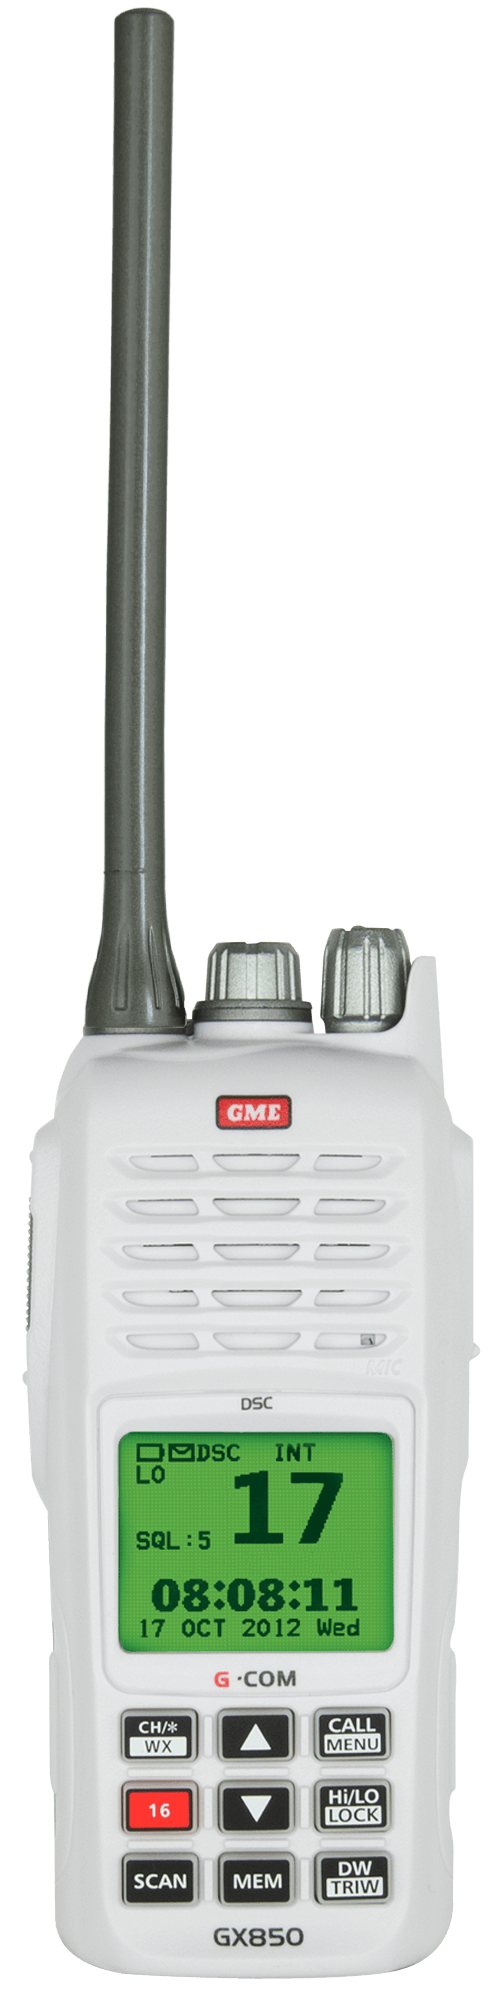 GX850 VHF Marine Handheld Radio